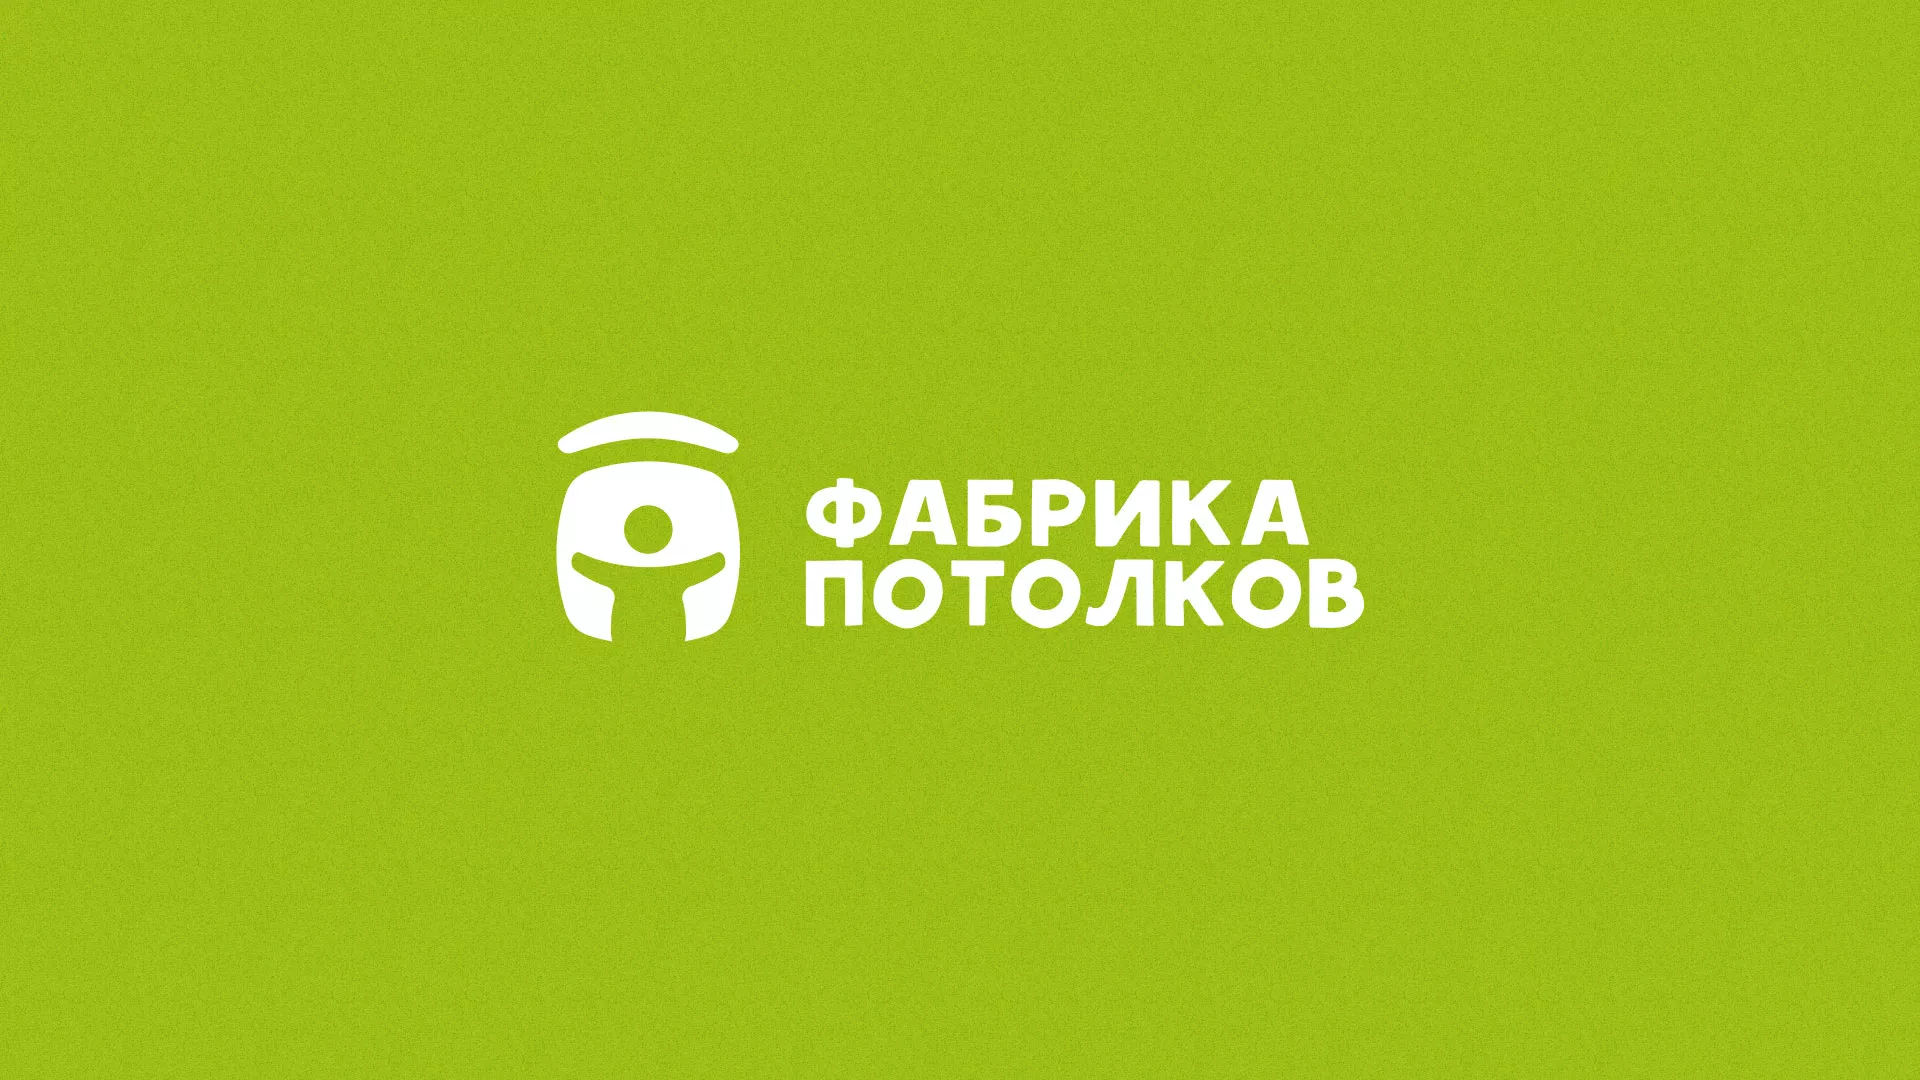 Разработка логотипа для производства натяжных потолков в Петровске